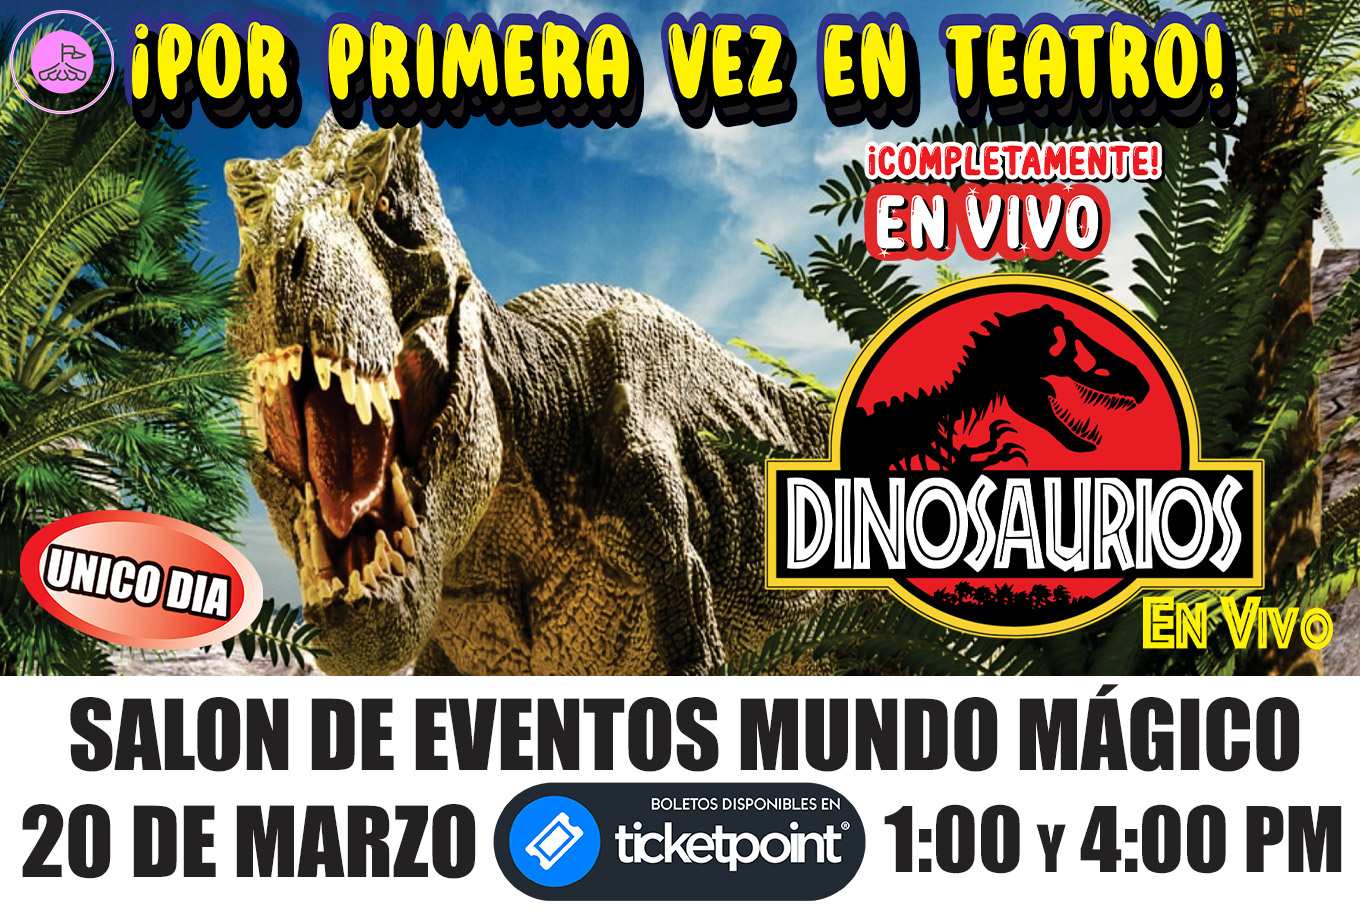 Dinosaurios - TicketPoint